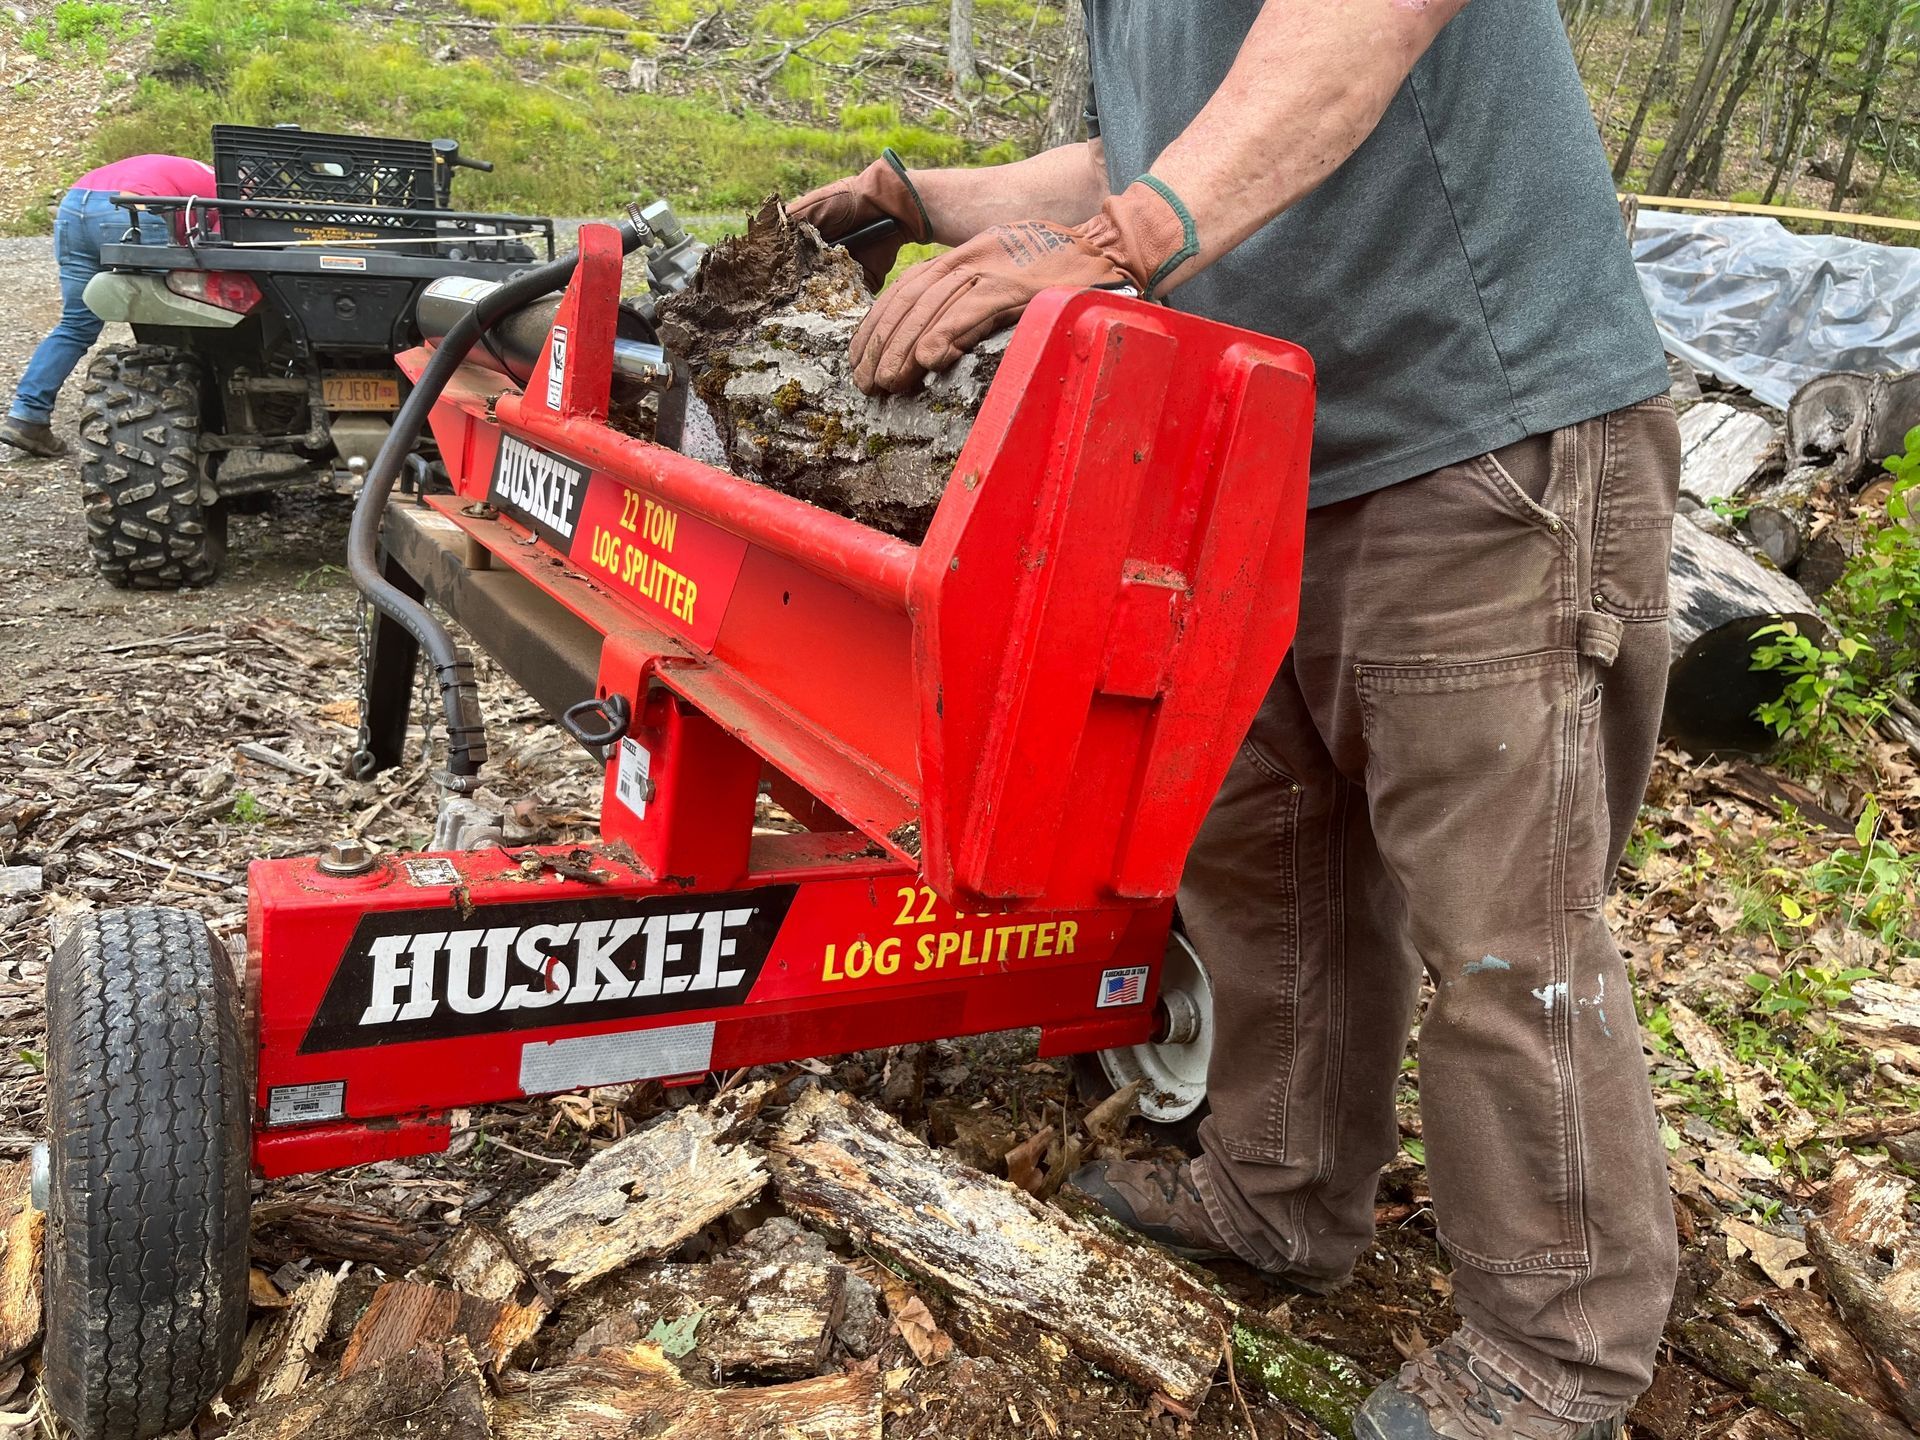 A man is using a huskee log splitter to split logs